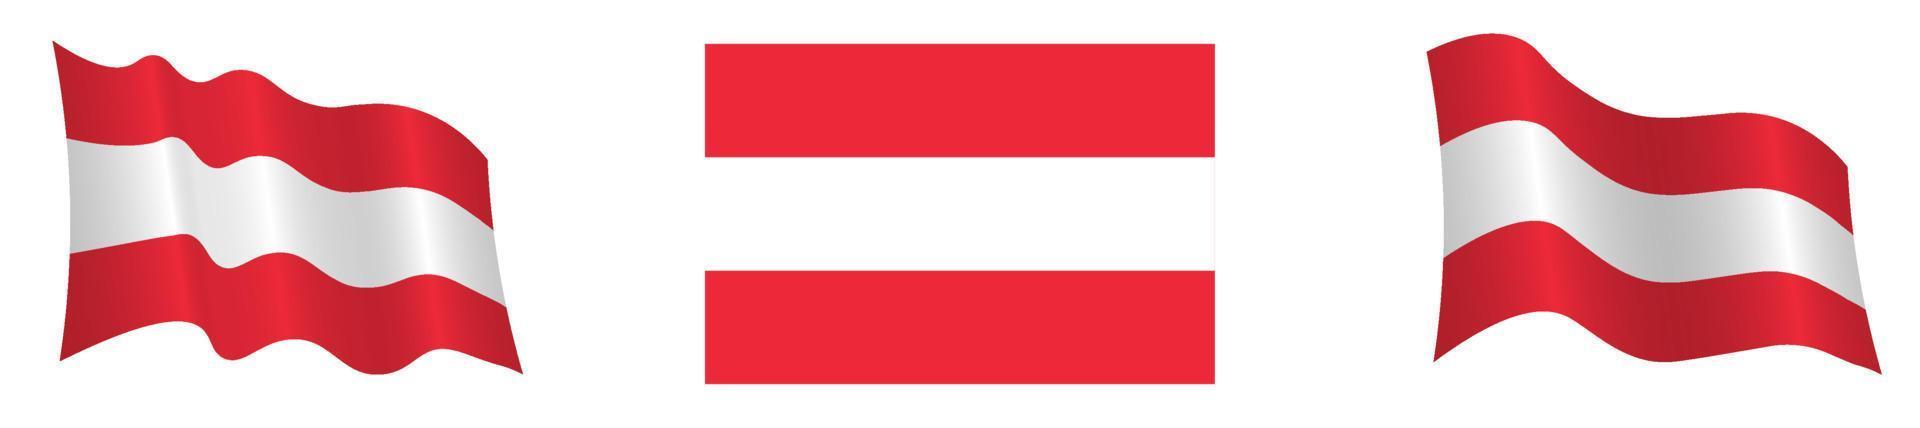 bandiera della repubblica austriaca in posizione statica e in movimento, che si sviluppa nel vento, su sfondo bianco. colori accurati della bandiera approvati vettore